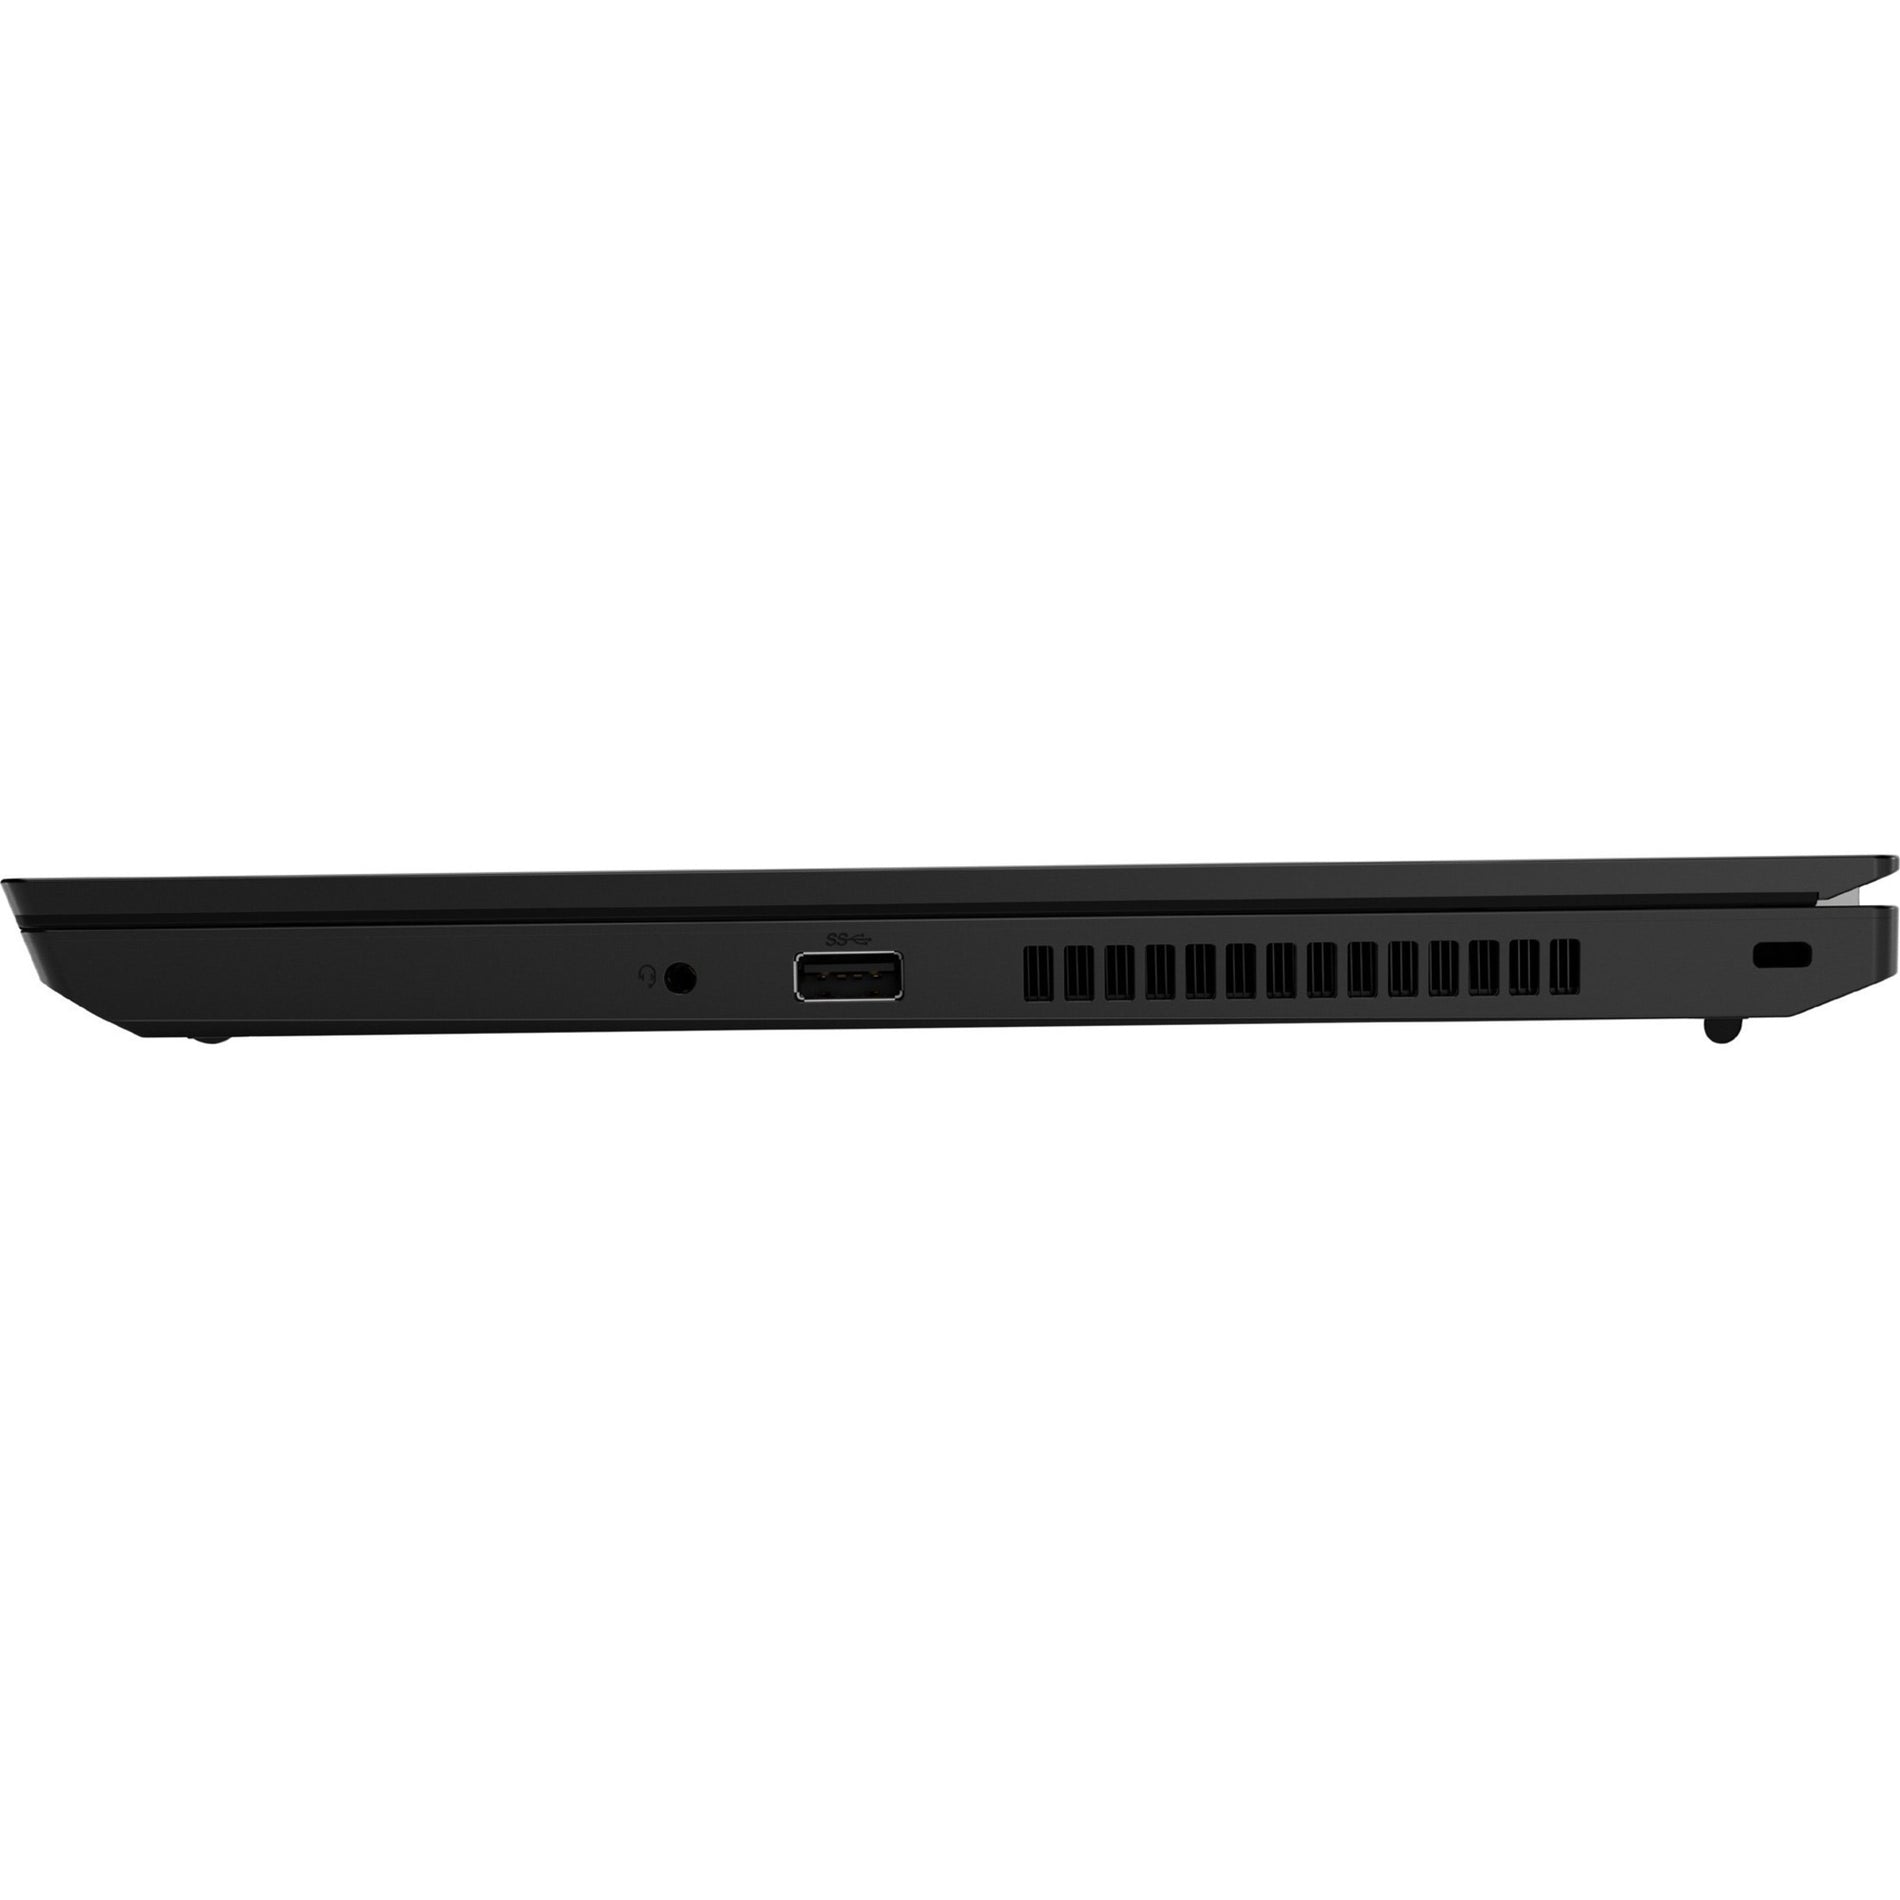 Lenovo 20U1005MUS ThinkPad L14 Gen1 Notebook, Core i5, 8GB RAM, 256GB SSD, Windows 10 Pro